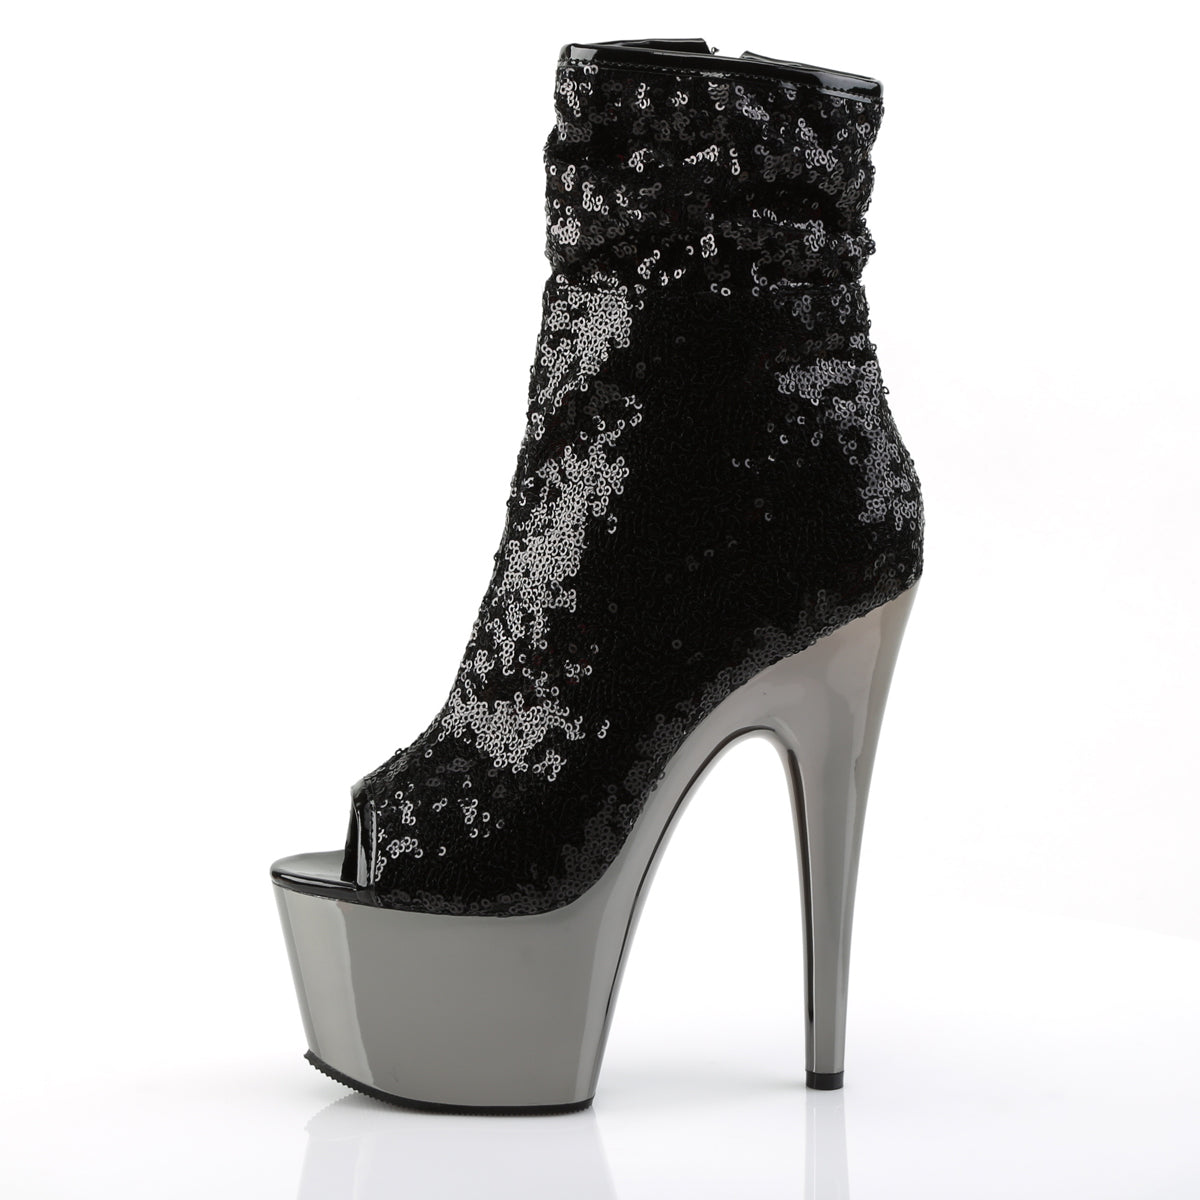 ADORE-1008SQ 7" Black Sequin Pole Dance Platform Ankle Boots-Pleaser- Sexy Shoes Pole Dance Heels